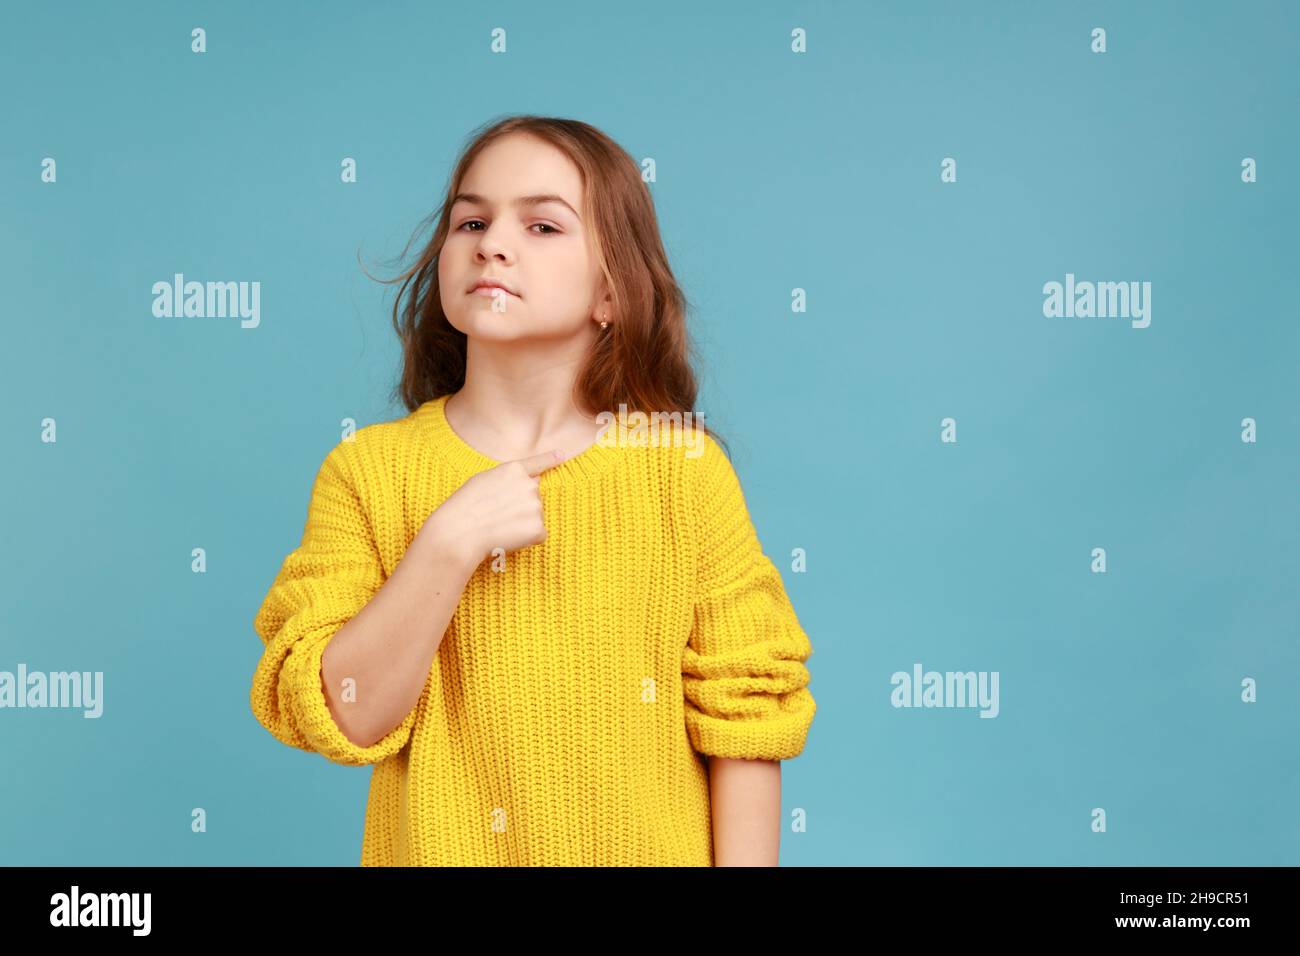 Porträt eines kleinen Mädchens, das stolz auf sich zeigt und sich rühmt, sich berühmt fühlt und einen gelben Pullover im lässigen Stil trägt. Innenaufnahme des Studios isoliert auf blauem Hintergrund. Stockfoto